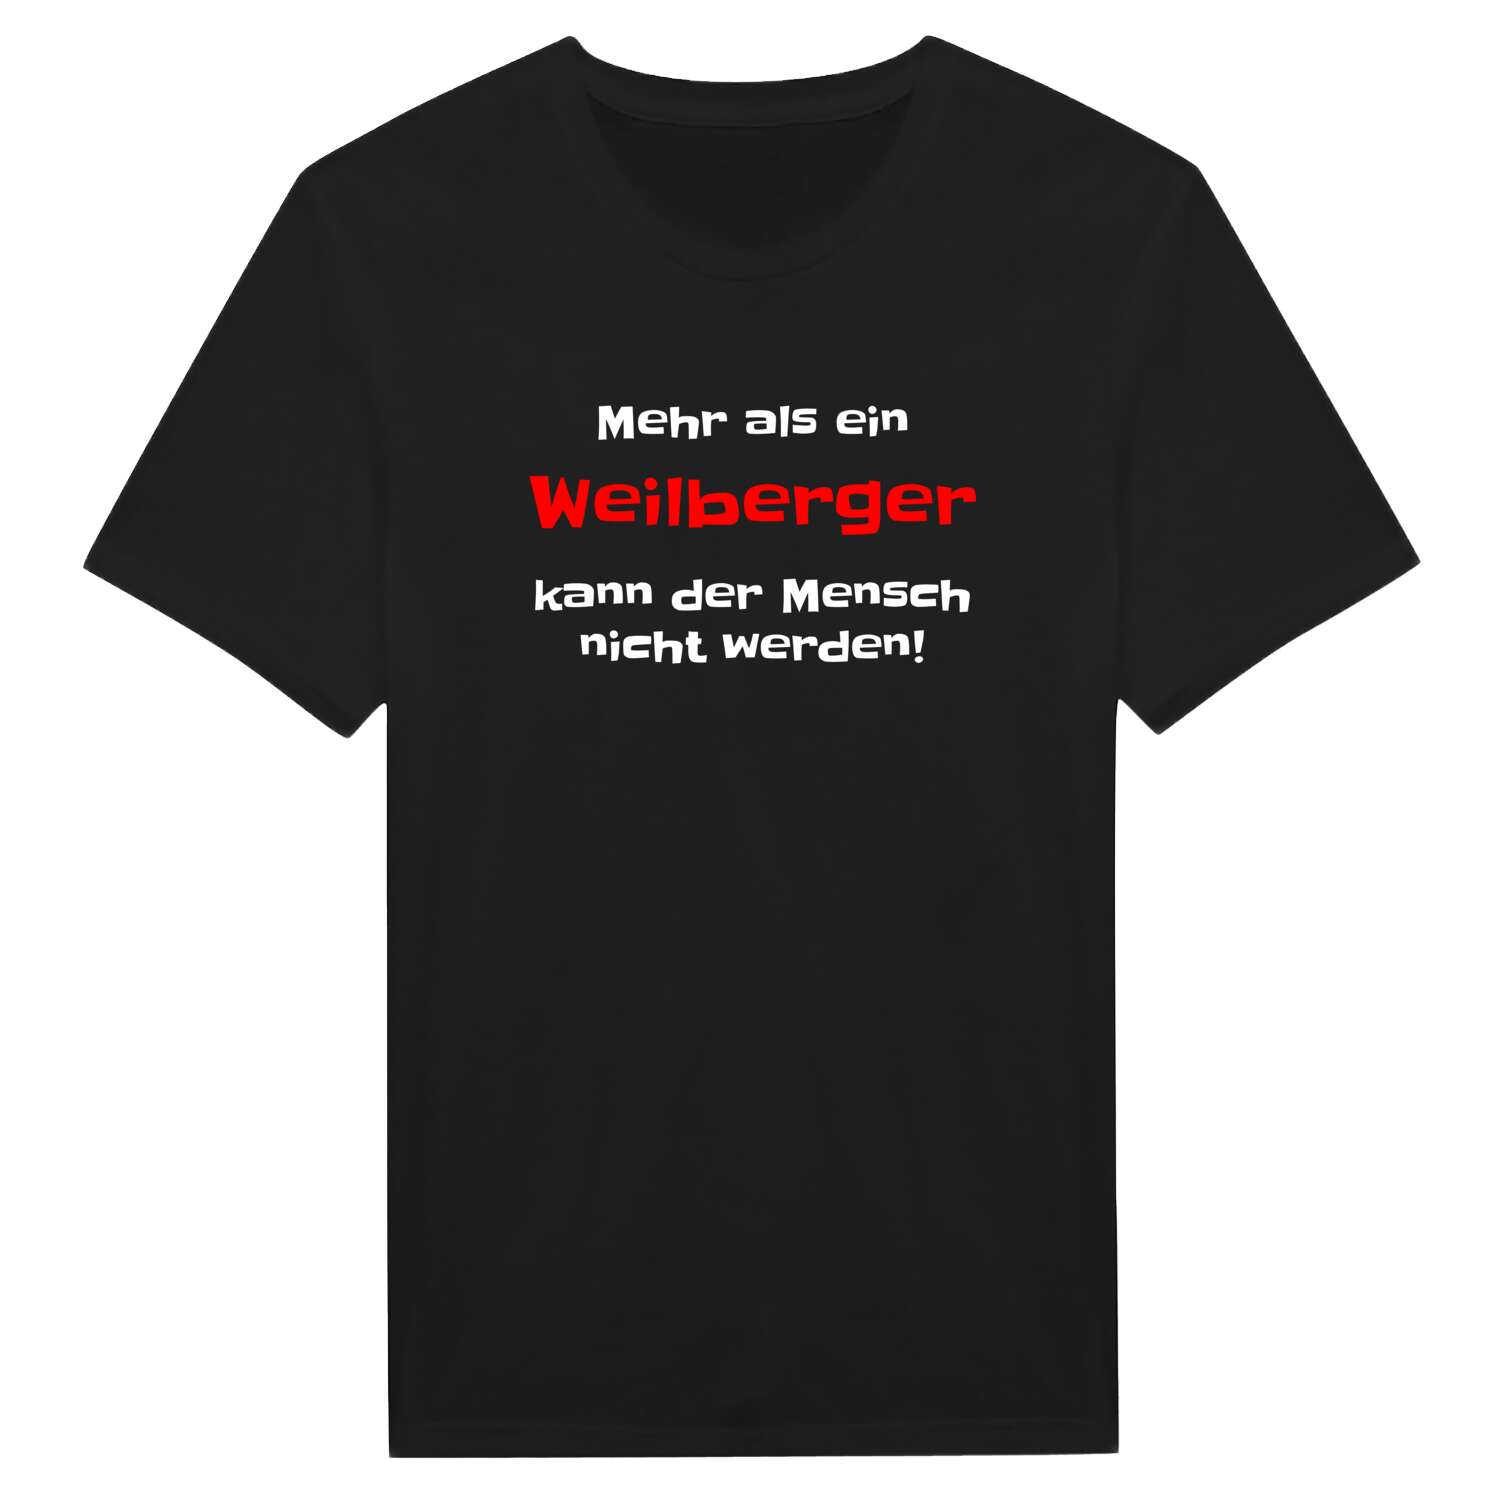 Weilberg T-Shirt »Mehr als ein«